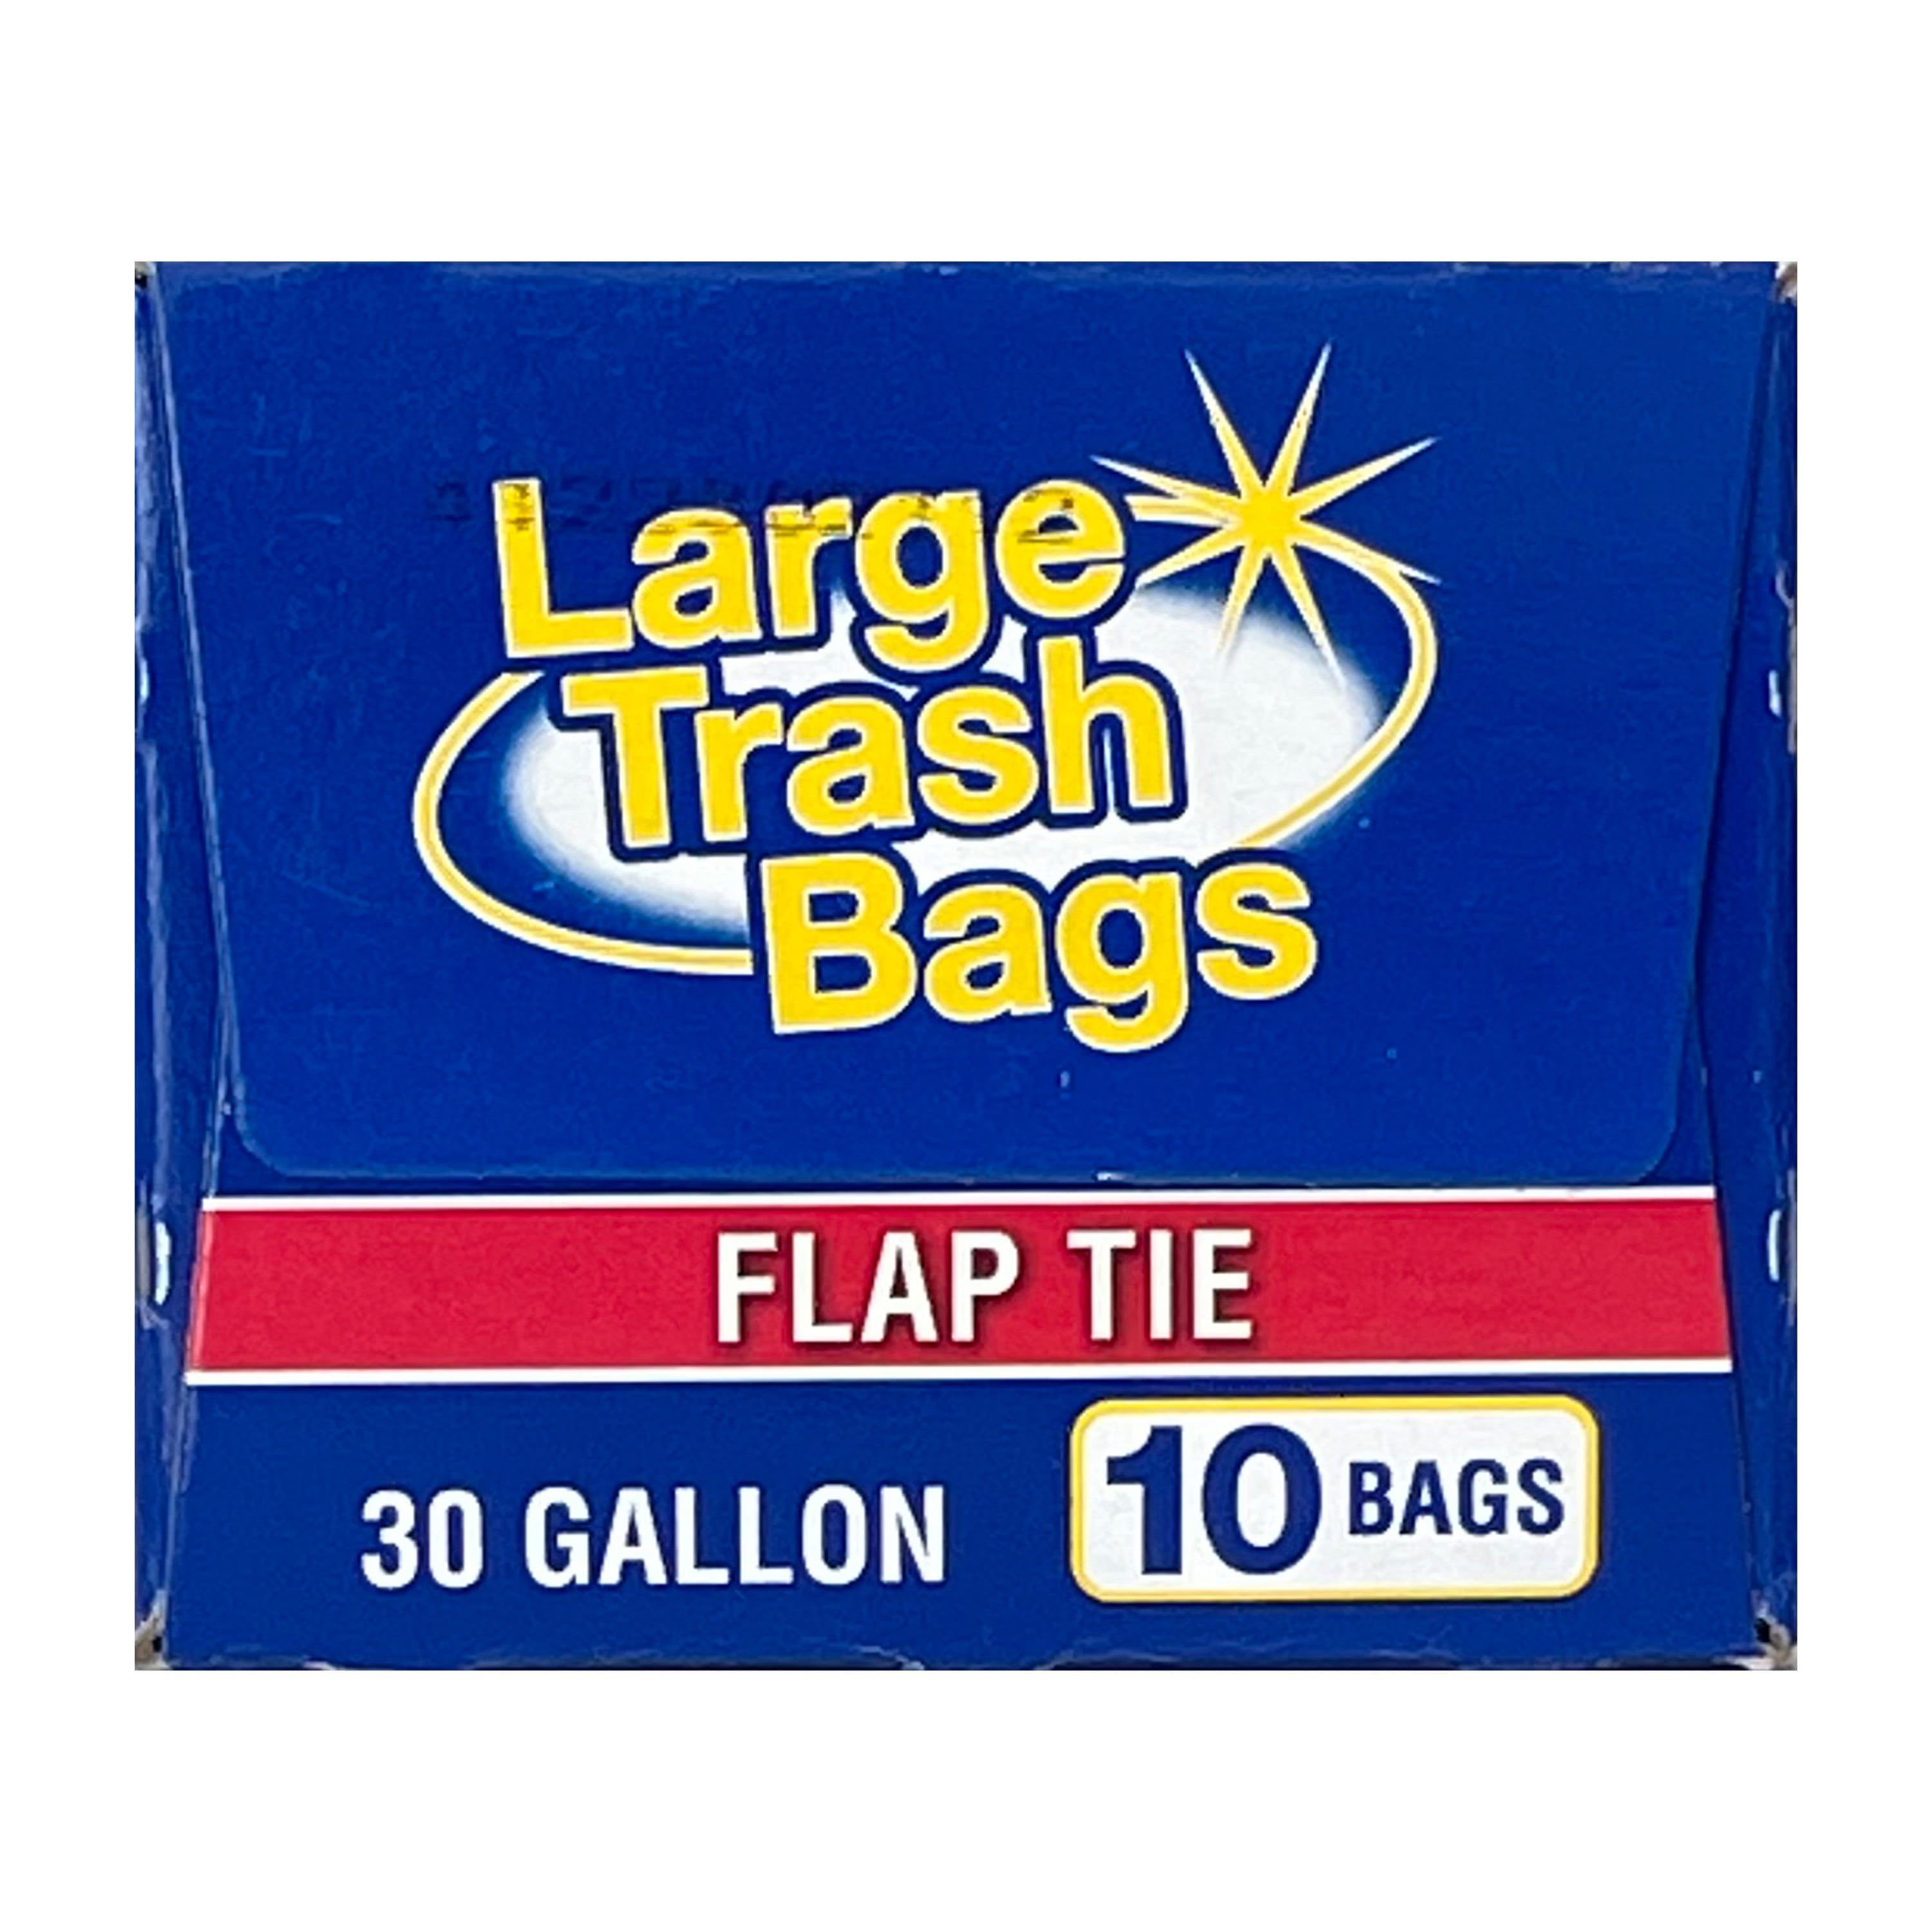 Always Save Trash Bags & Ties 30 G, Trash Bags